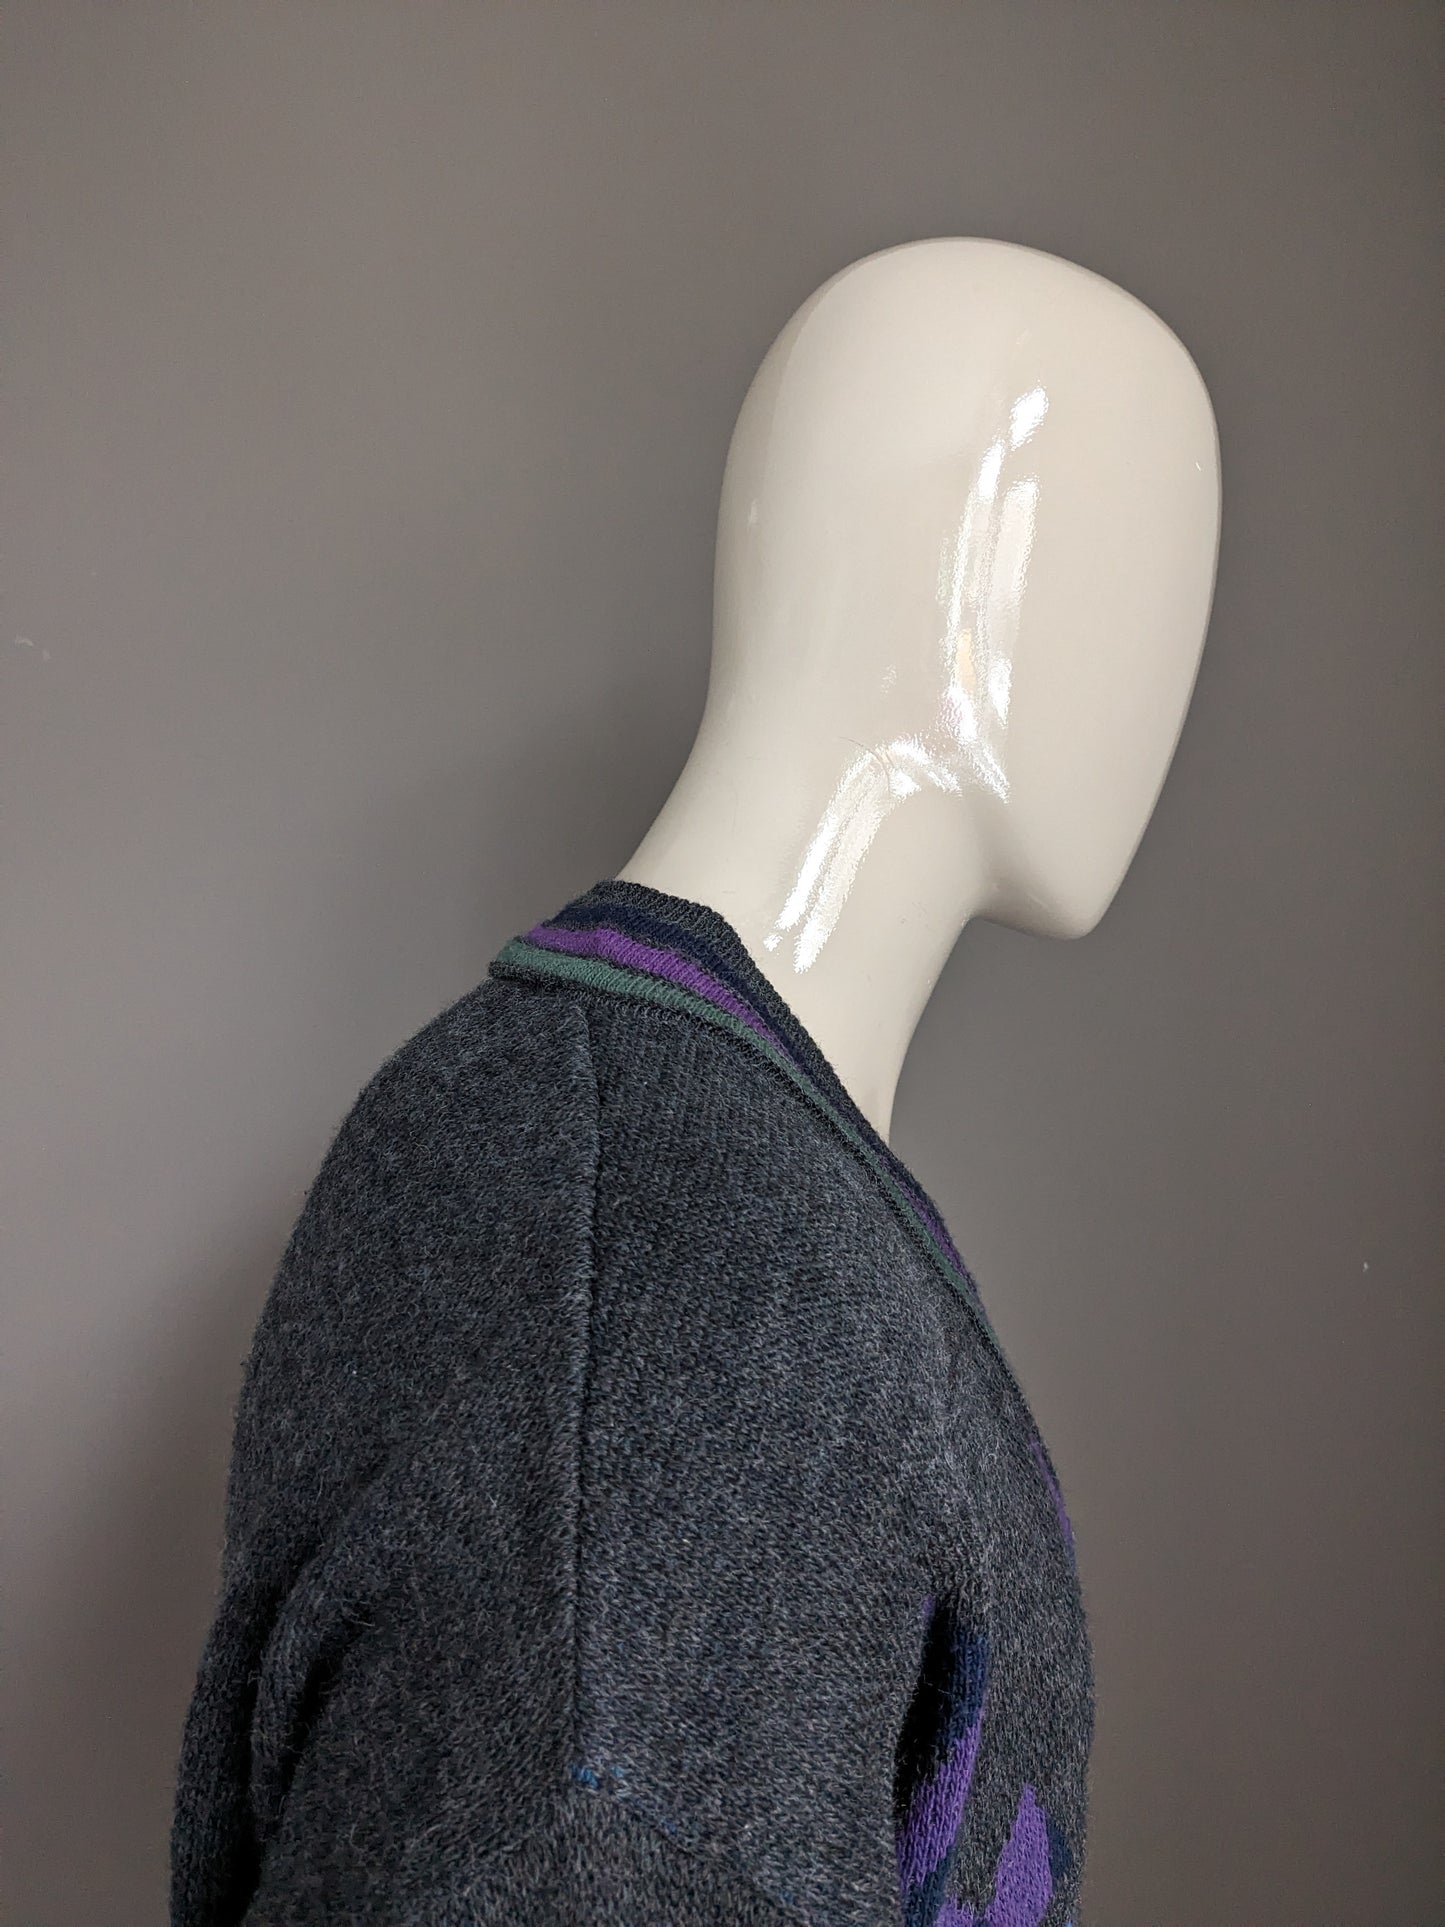 Pull en laine Paco Calvari vintage avec col en V. Green vert violet rouge bleu coloré. Taille L. (50% de laine)